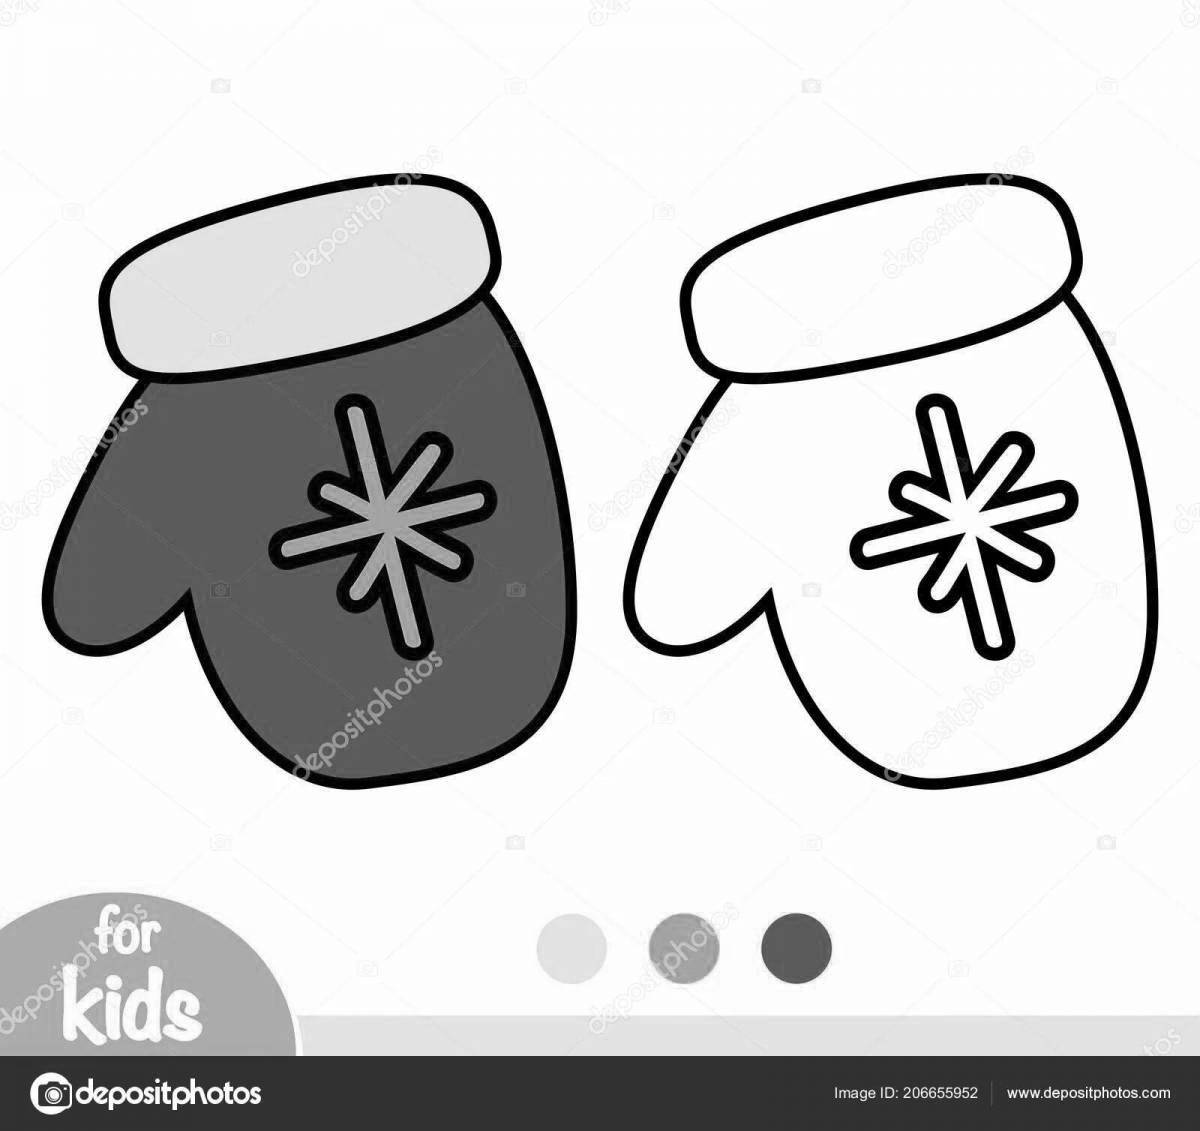 Creative coloring mittens for kindergarten